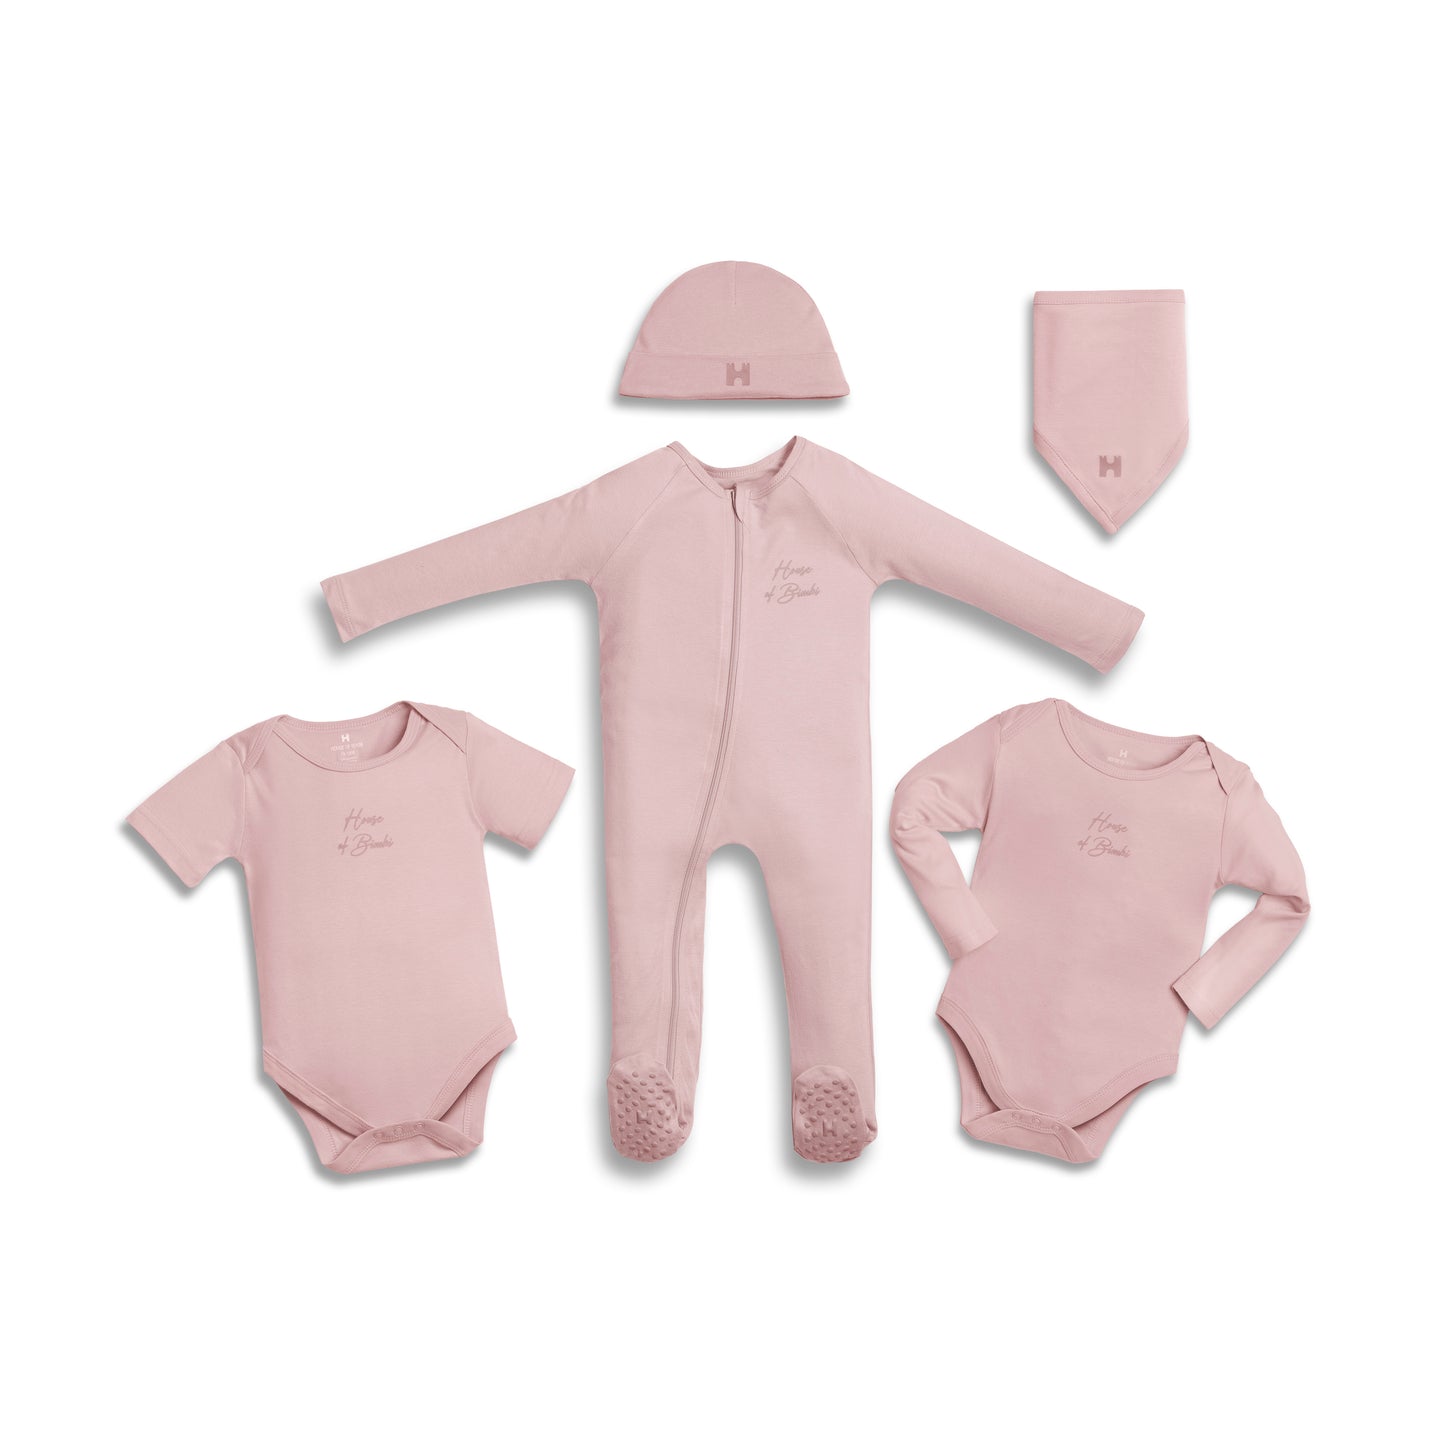 Grand Baby Shower Gift Box - Pink